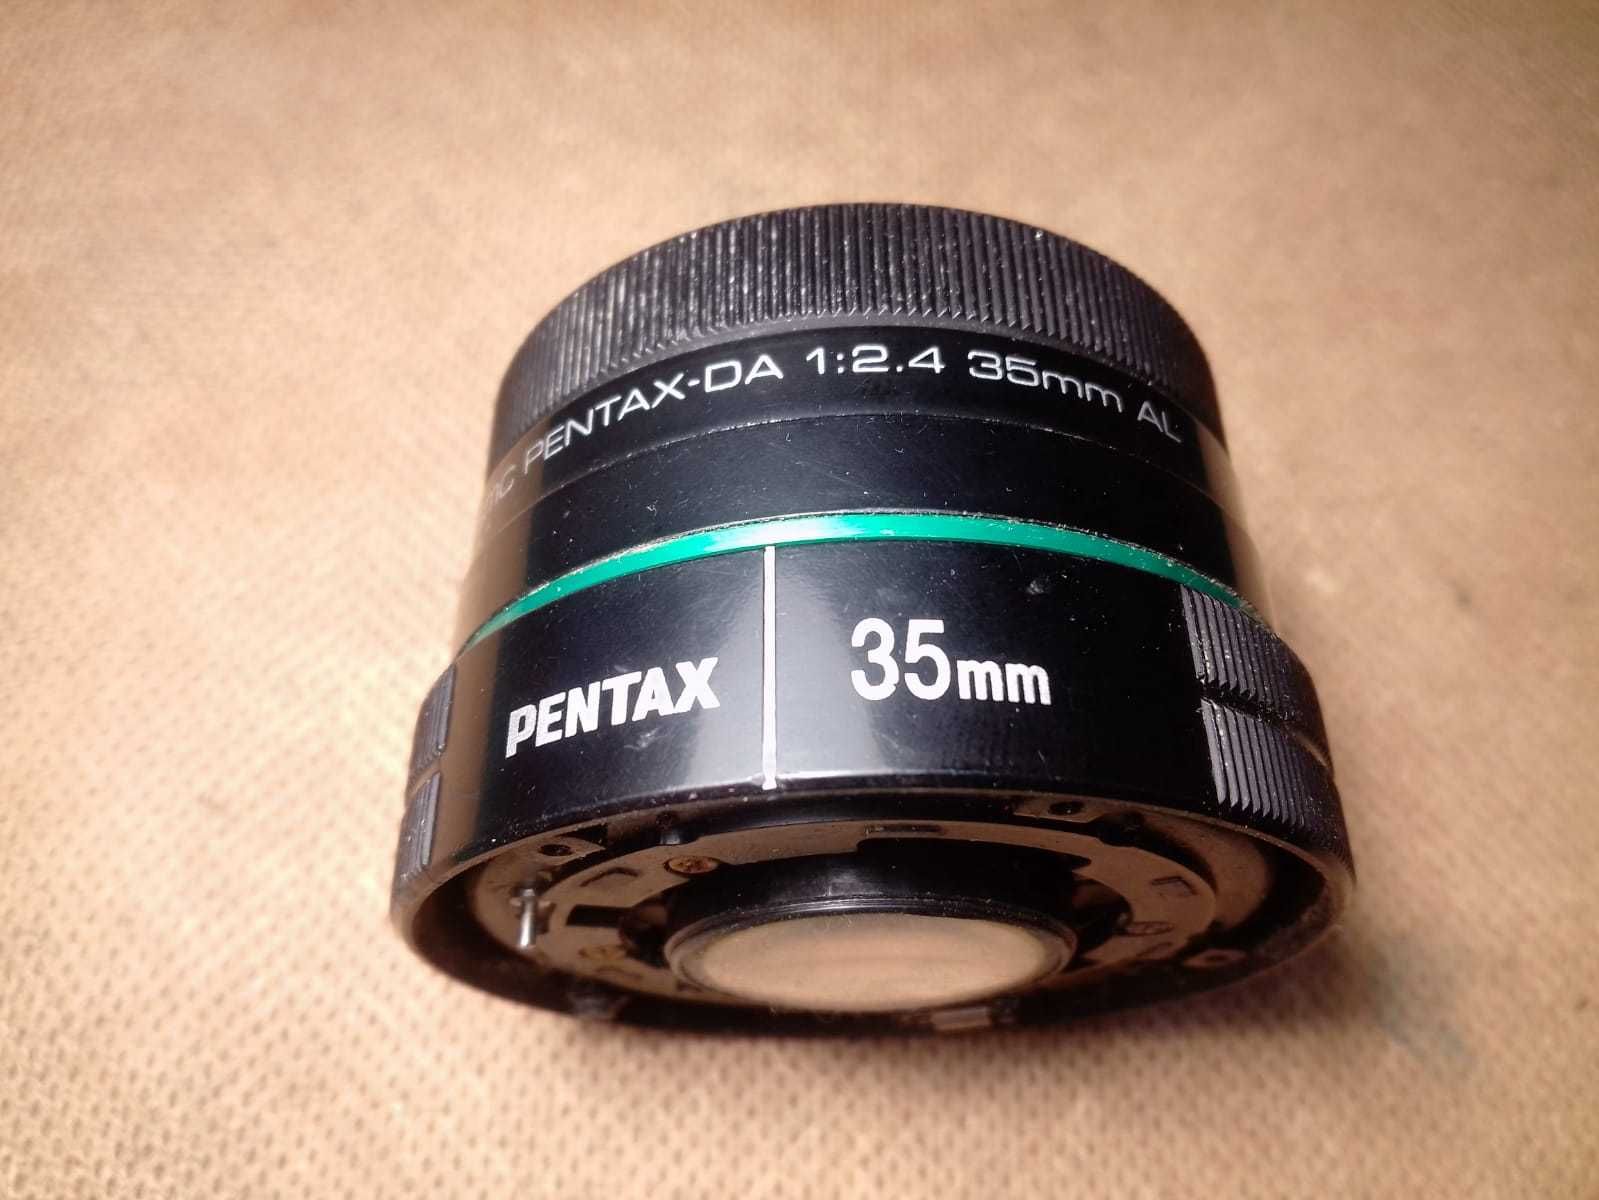 PENTAX 35 mm / 1:2.4 35 mm AL